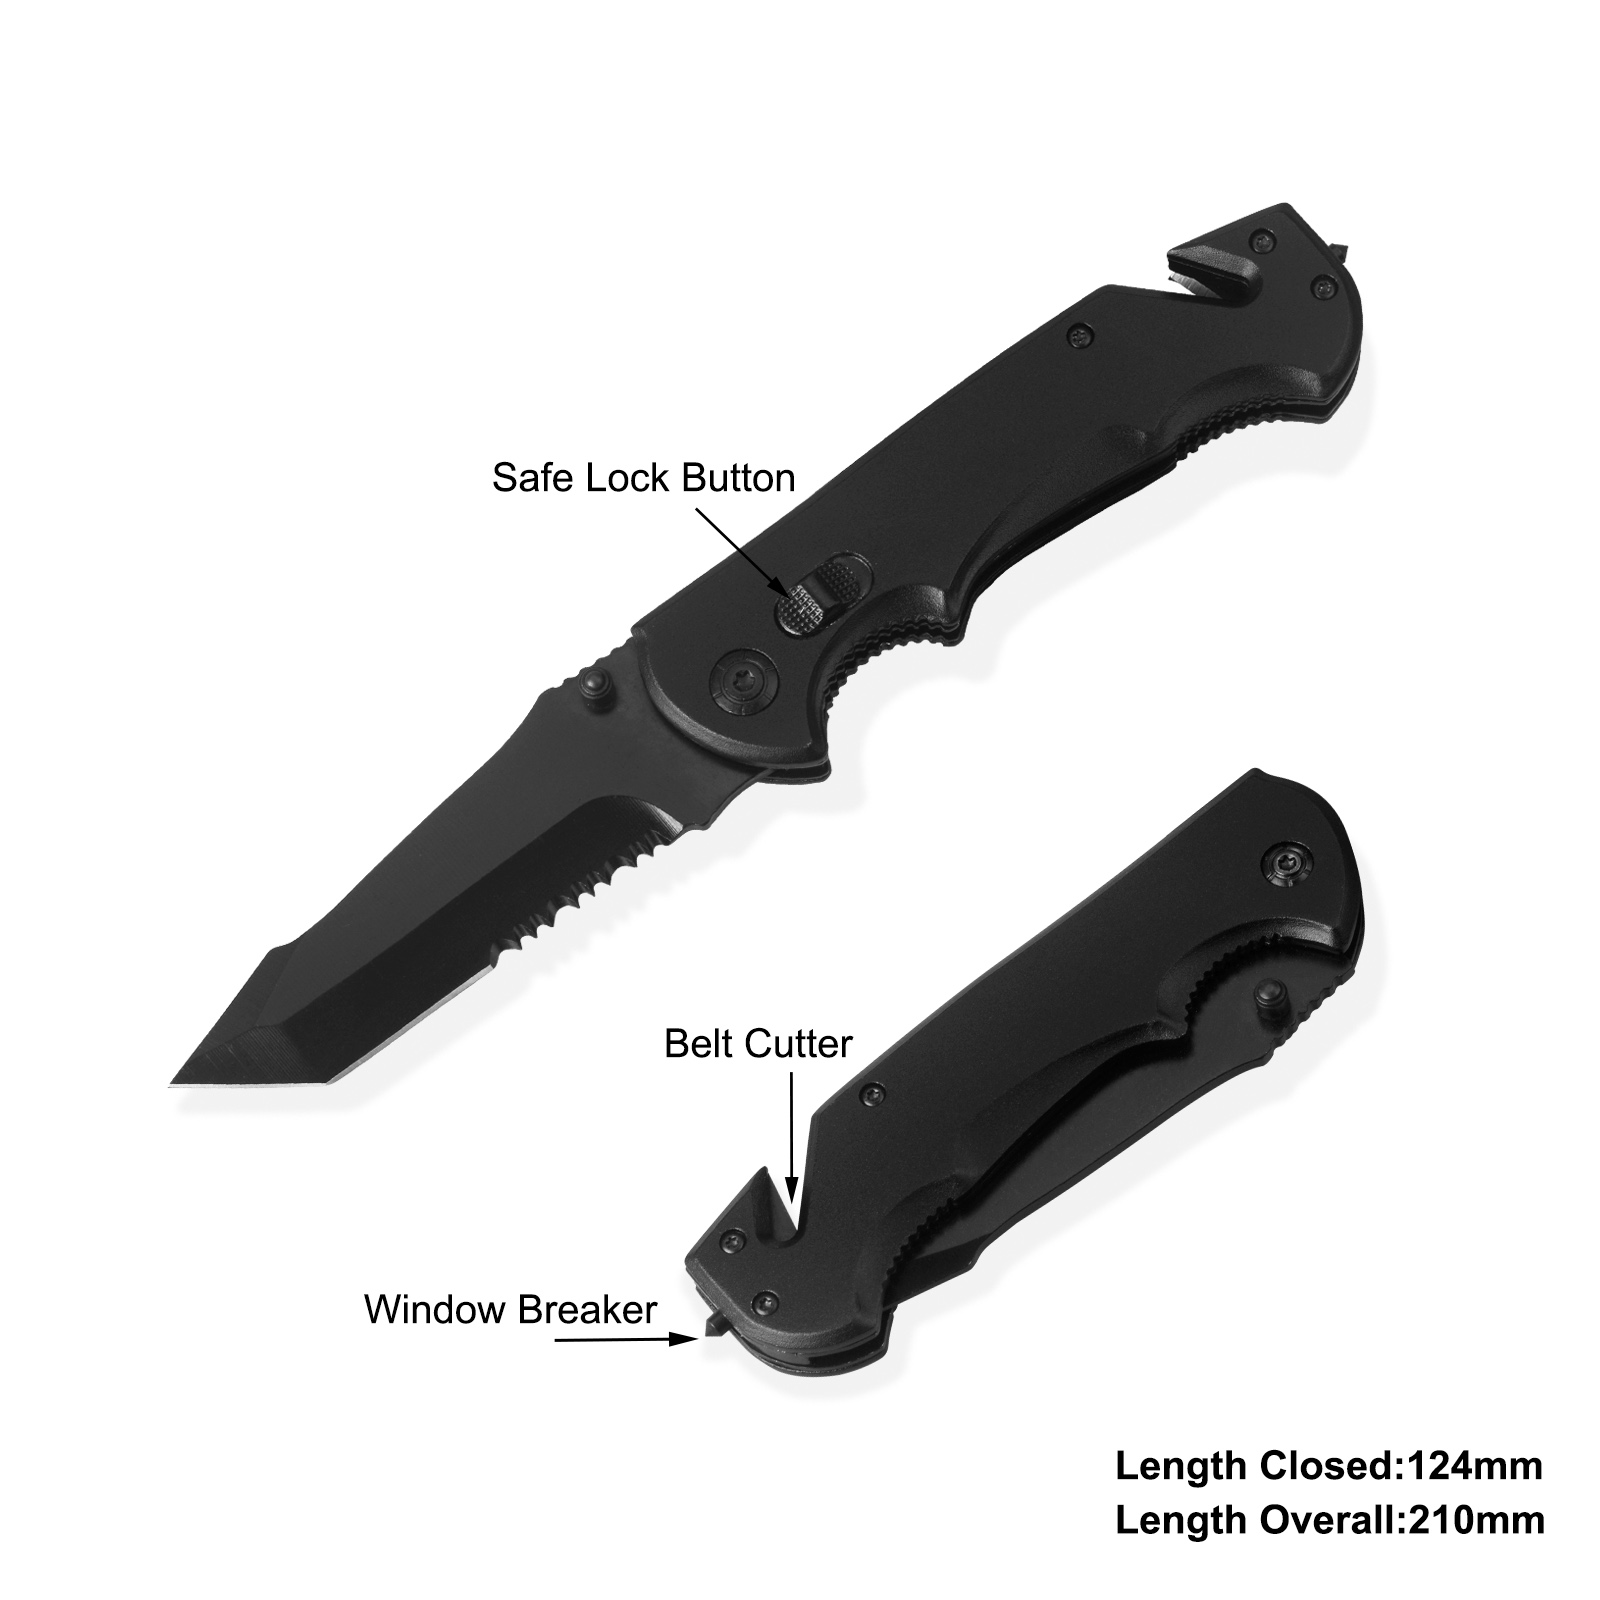 #31141 Survival Knife with Belt Cutter & Window Breaker